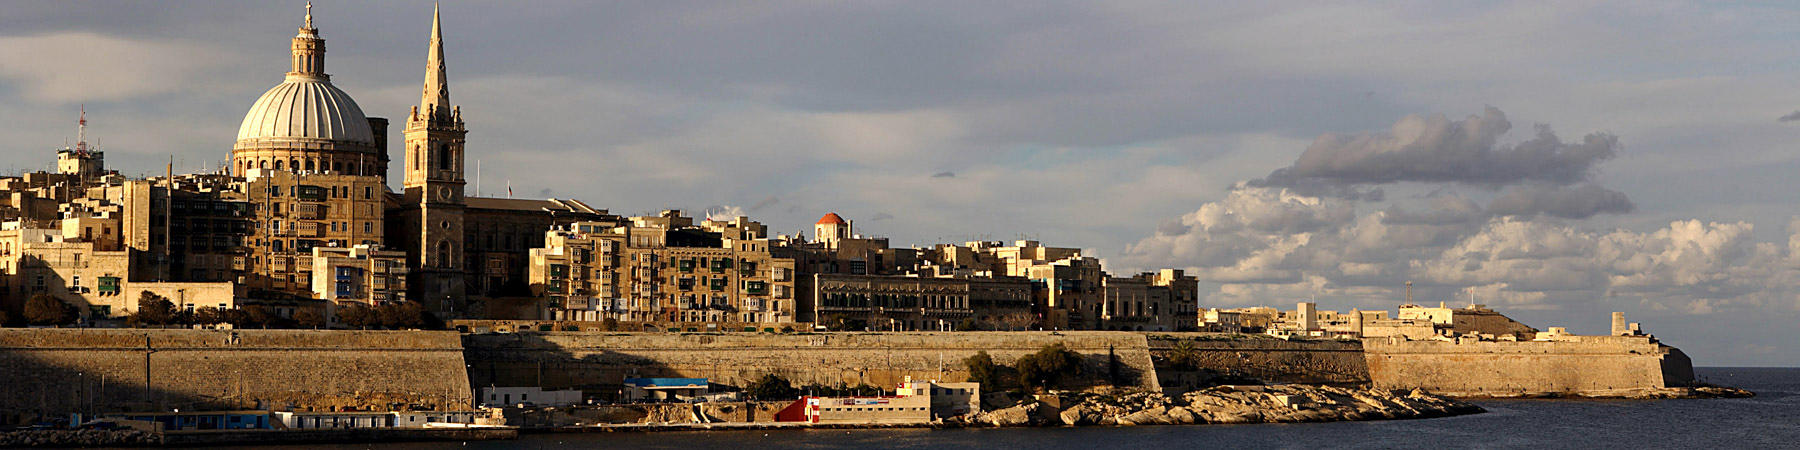 Les couleurs de Malte - Photo Pêcheur d'Images